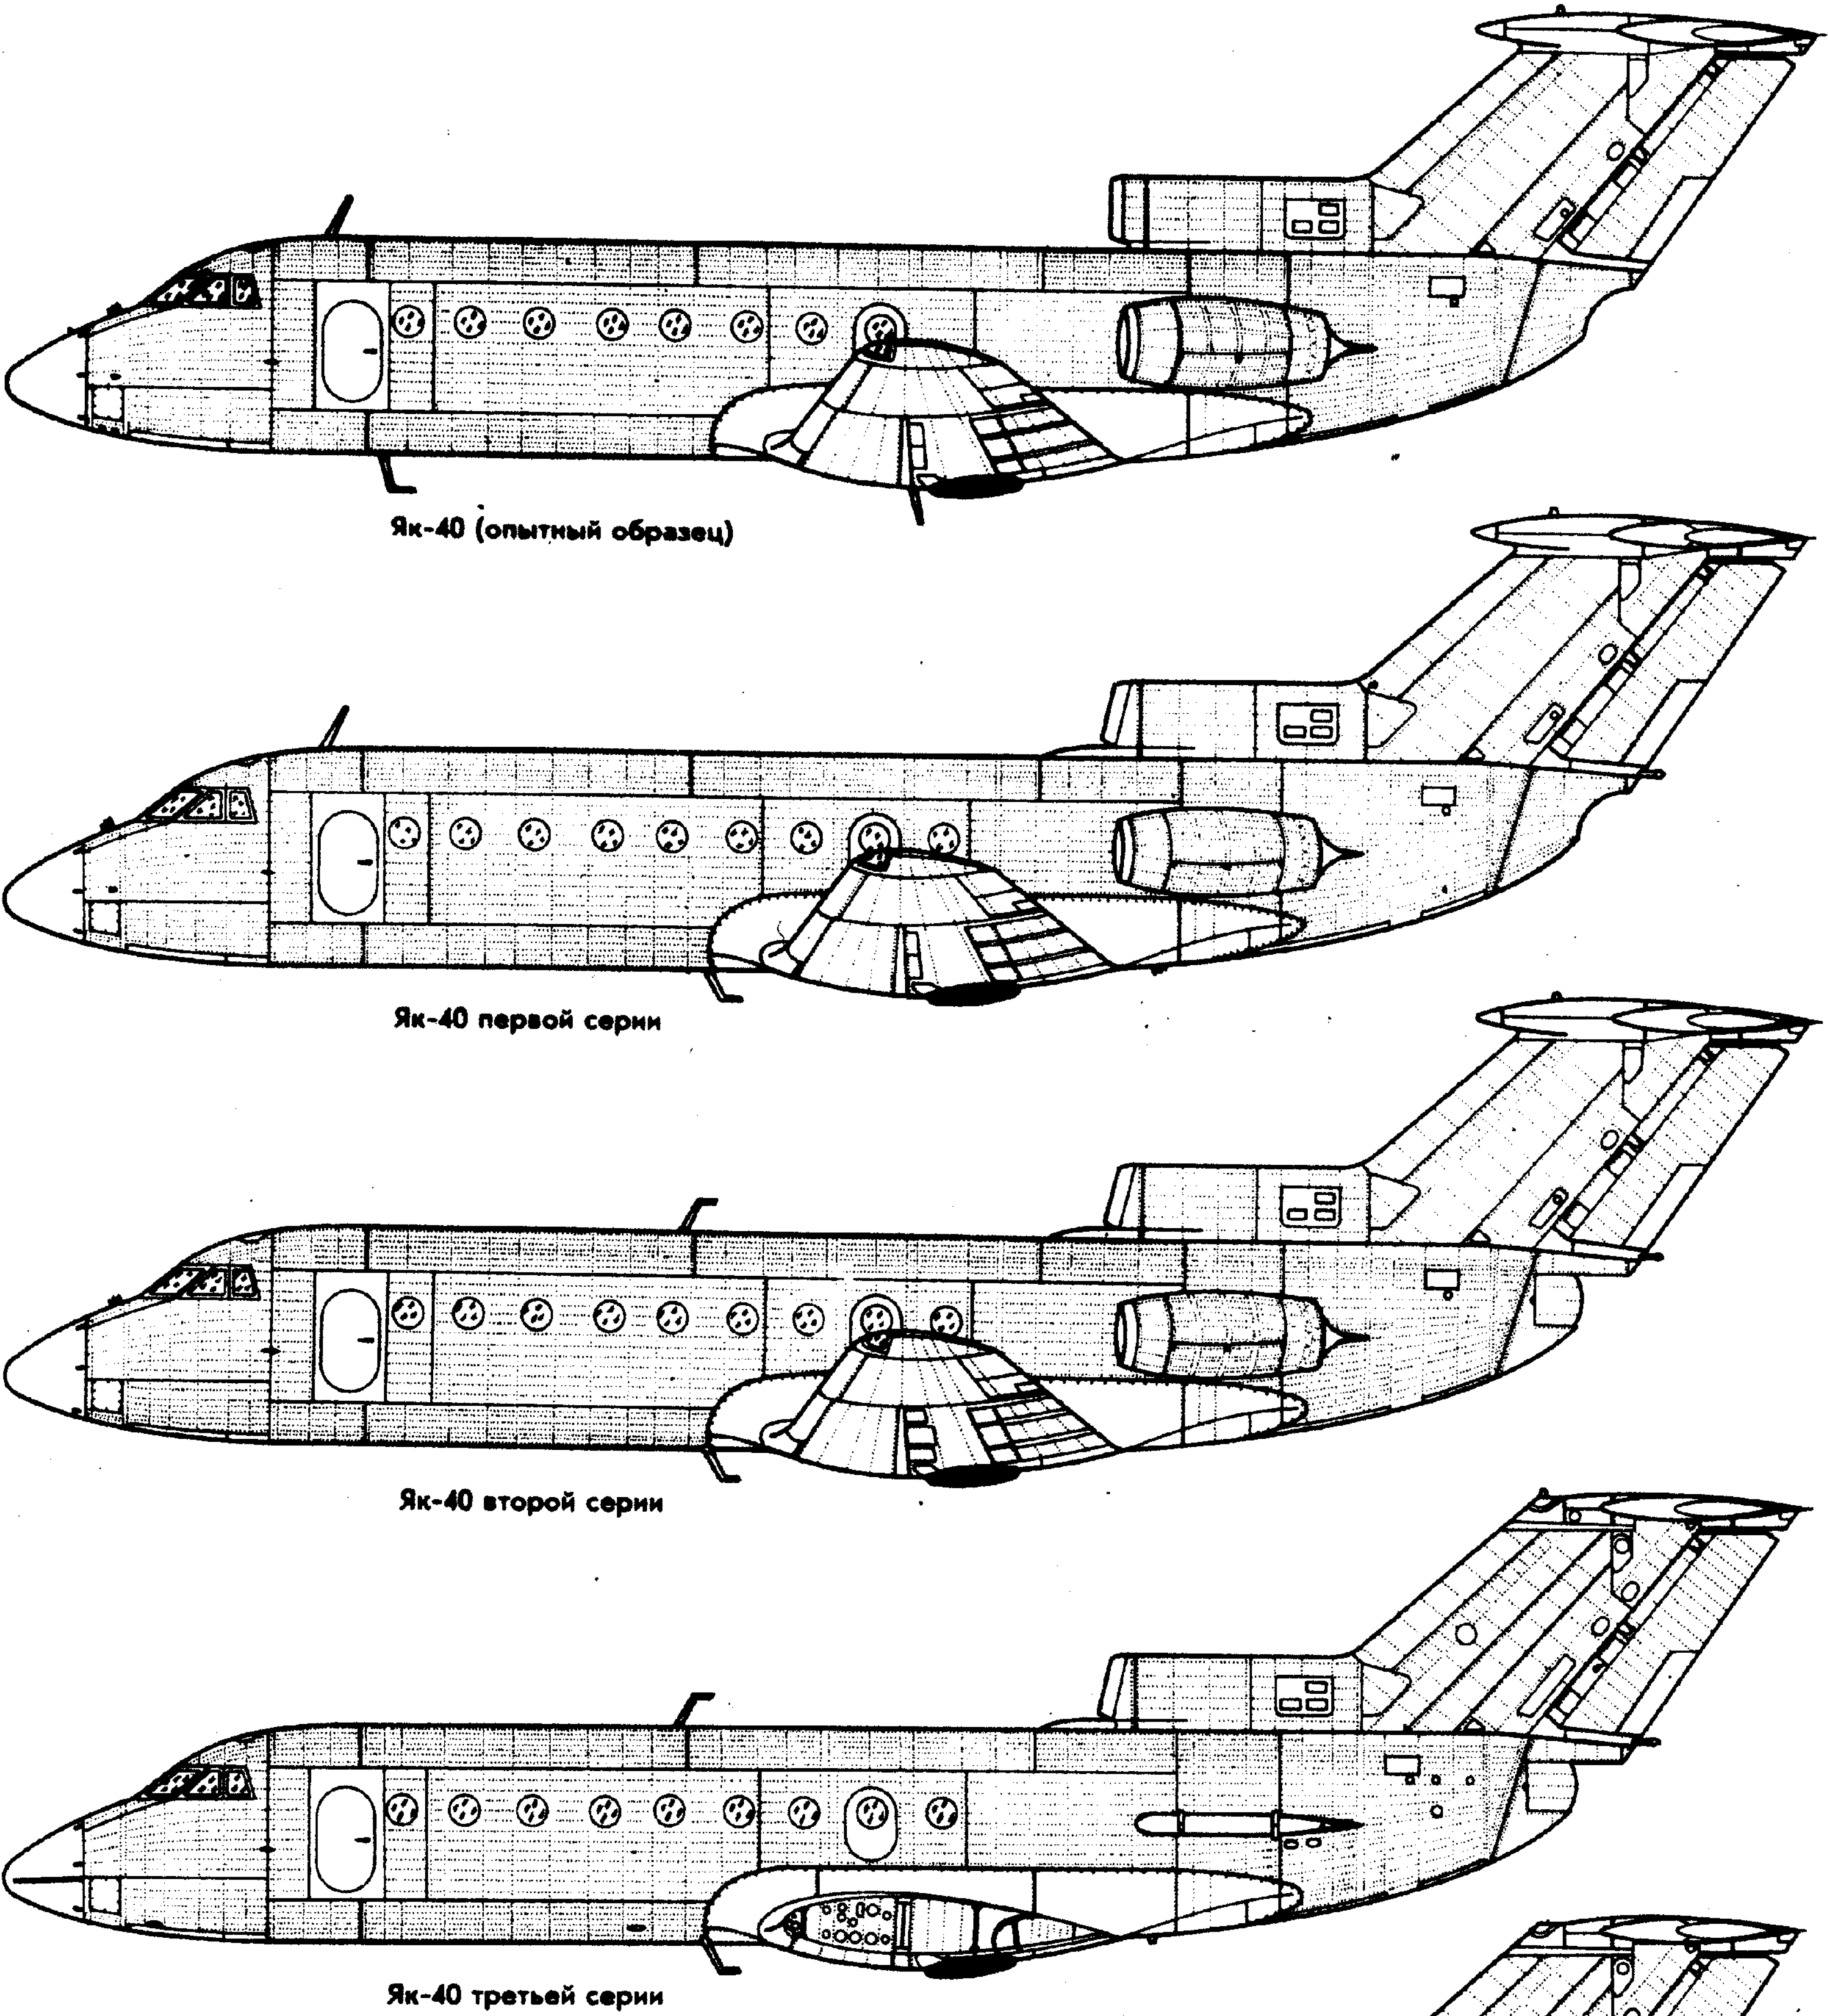 Як-40 советский авиалайнер с простым управлением